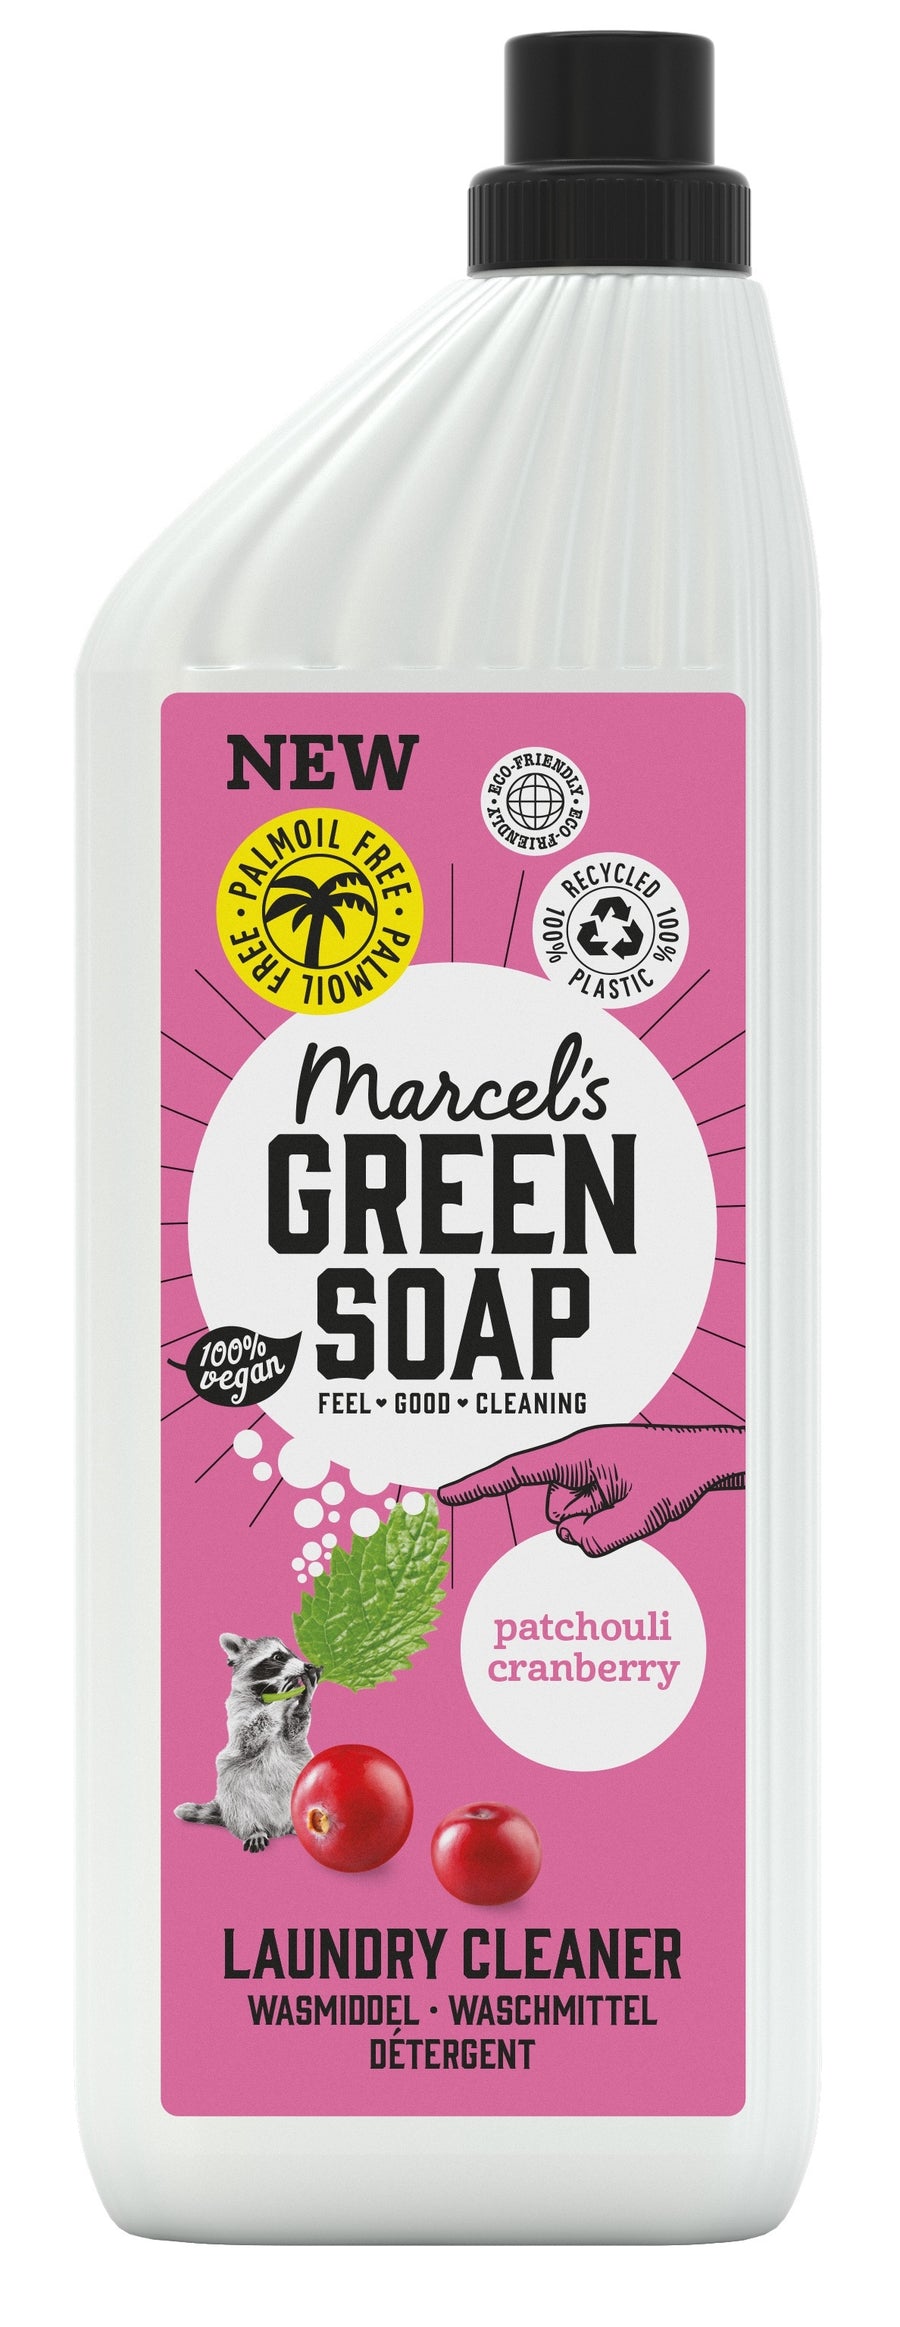 Marcel's Green Soap Patchouli & Cranberry Laundry Wash 1 Litre